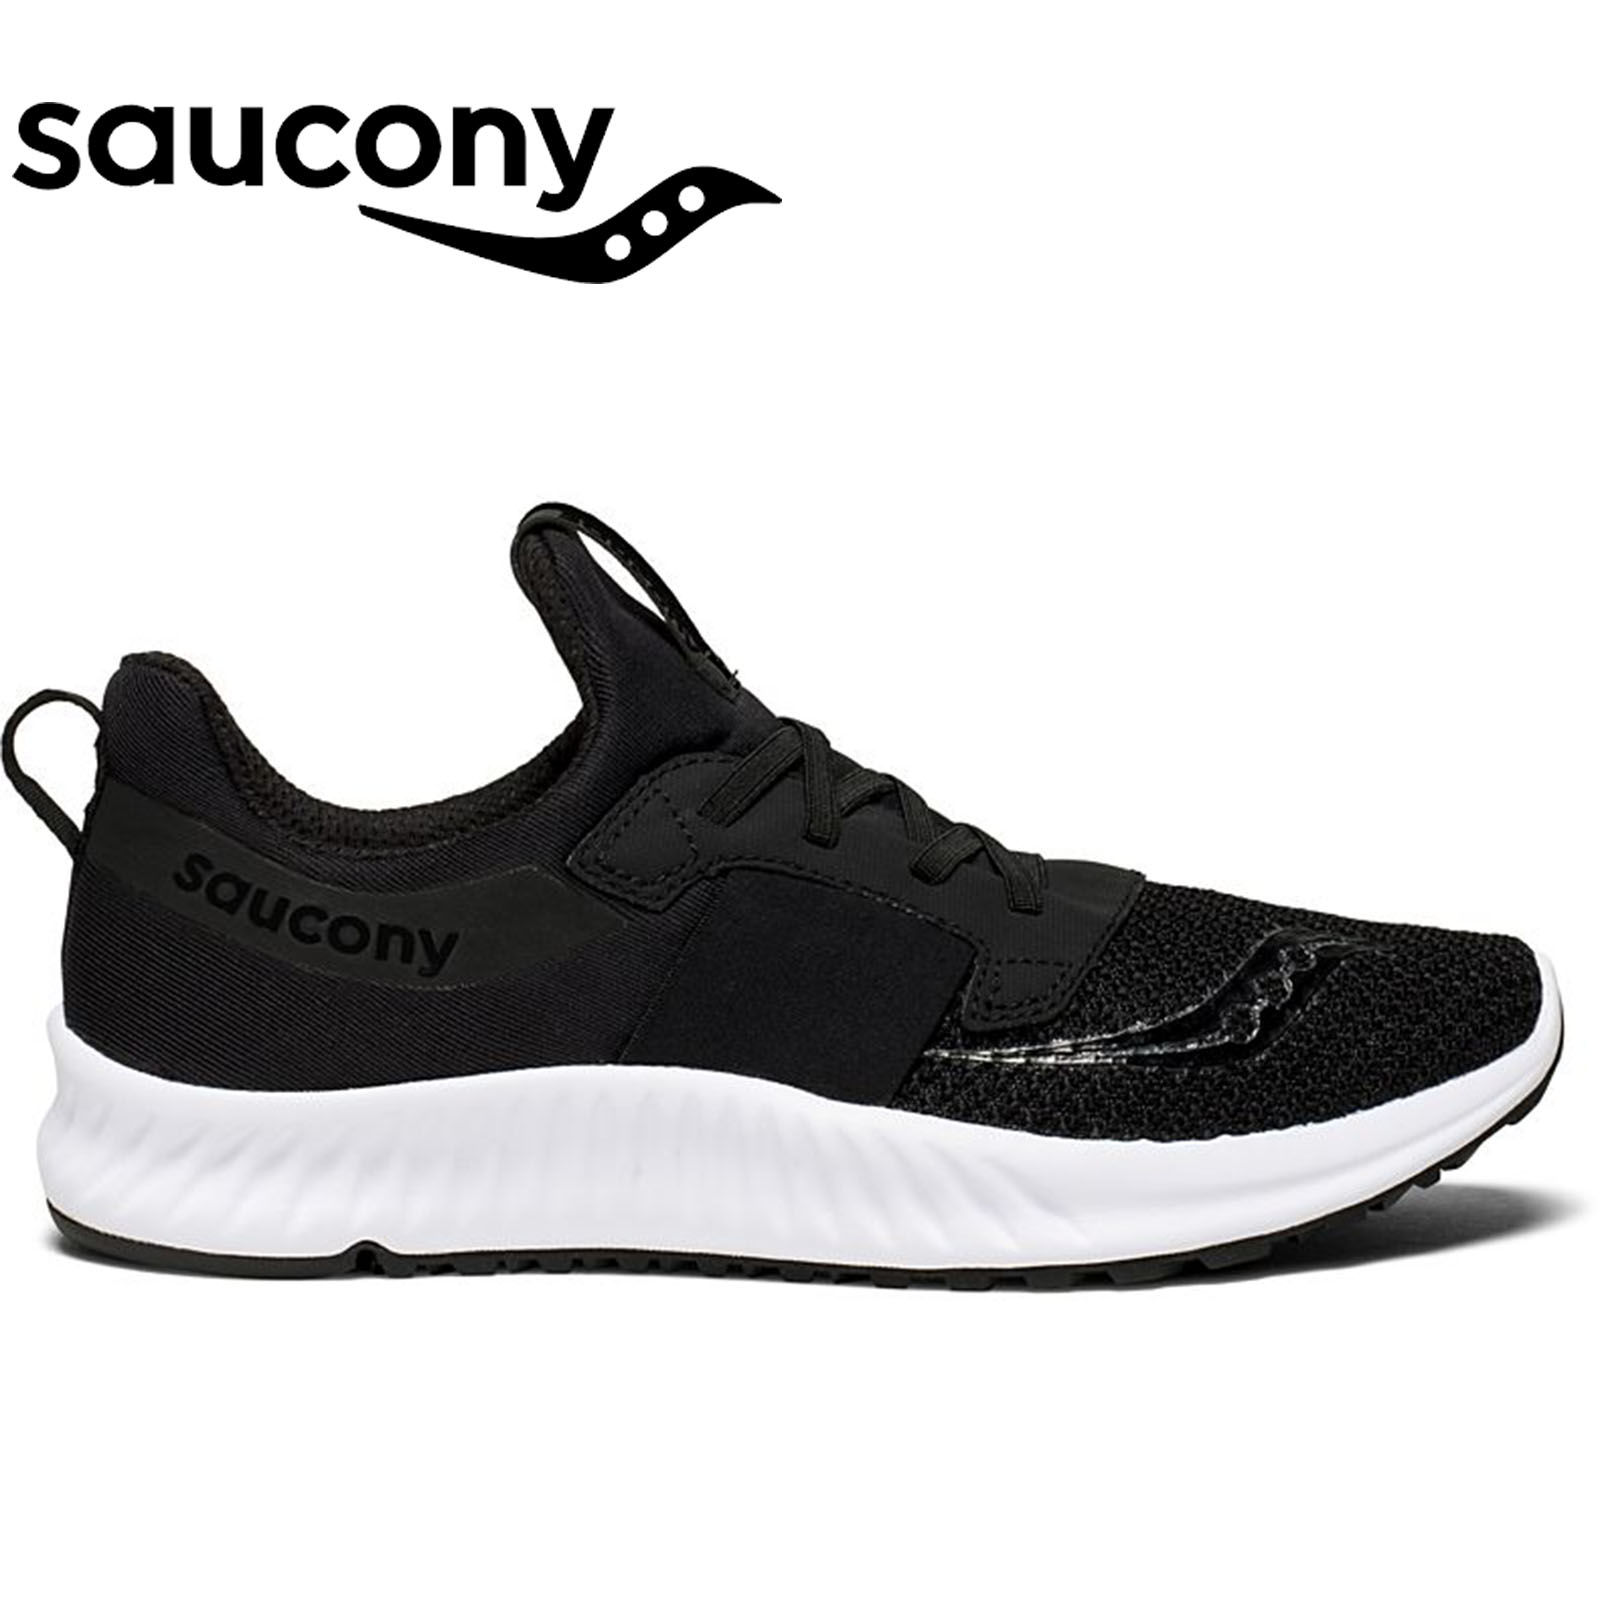 saucony women's sneakers black